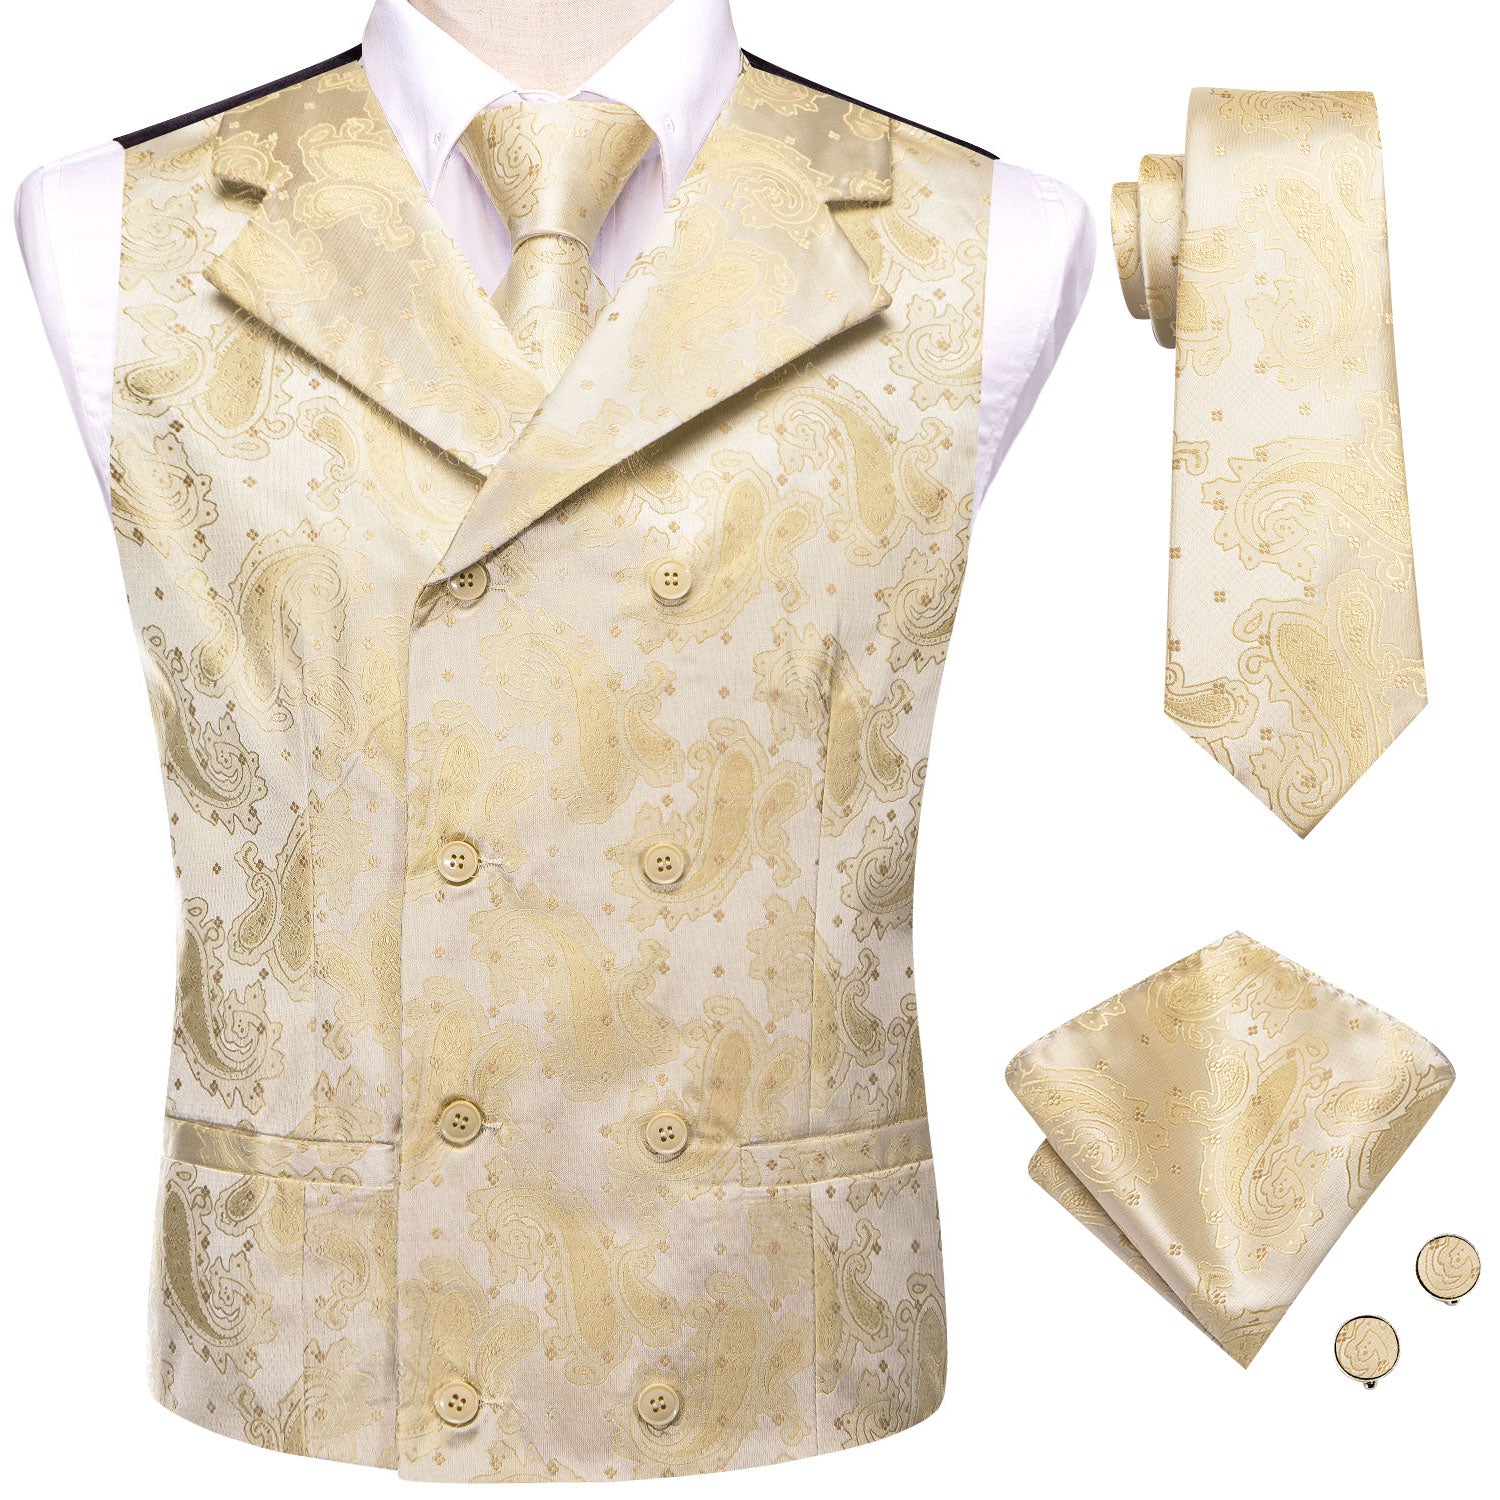 waistcoat    necktie  handkerchief and cufflinks  in same pattern 